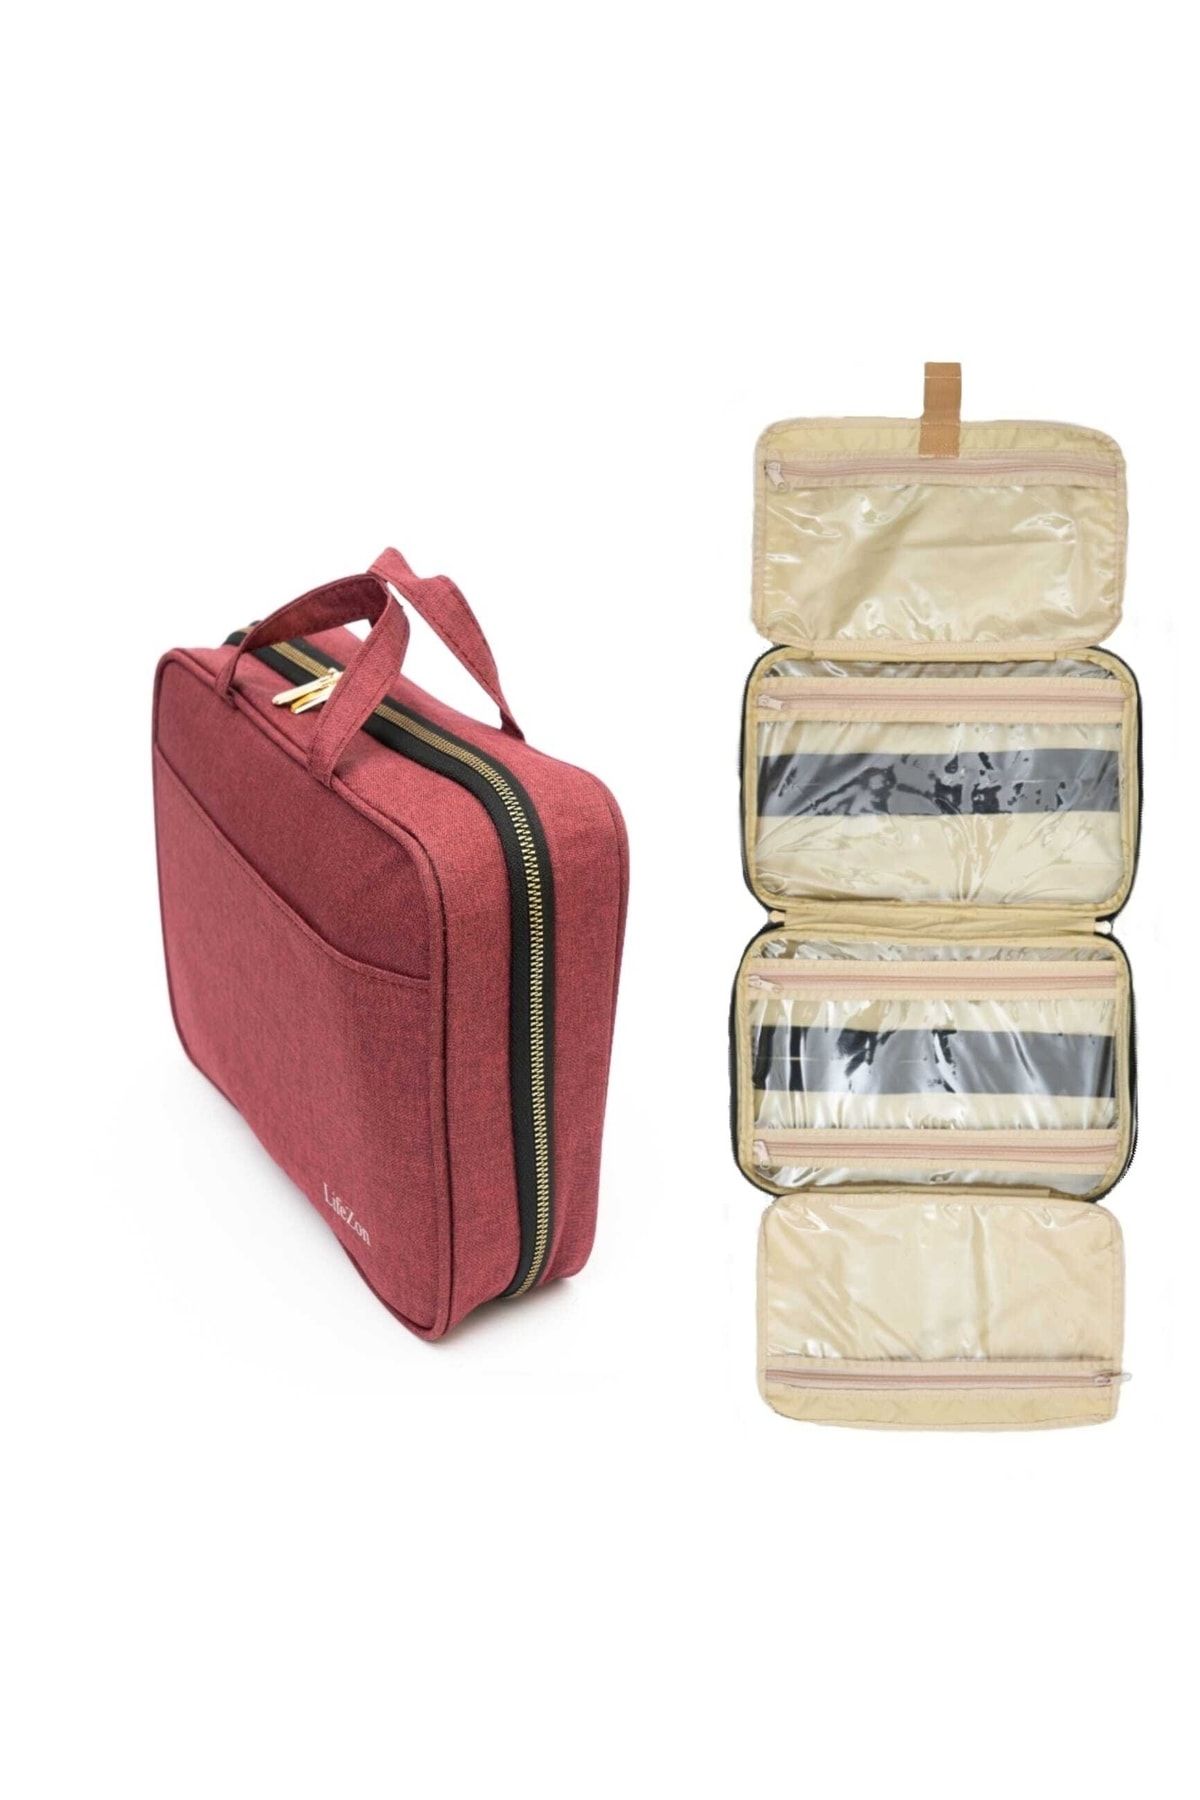 LifeZon Bavul Içi Düzenleyici Bavul Içi Organizer Makyaj Bavulu Çok Amaçlı Çanta Tatil Çantası